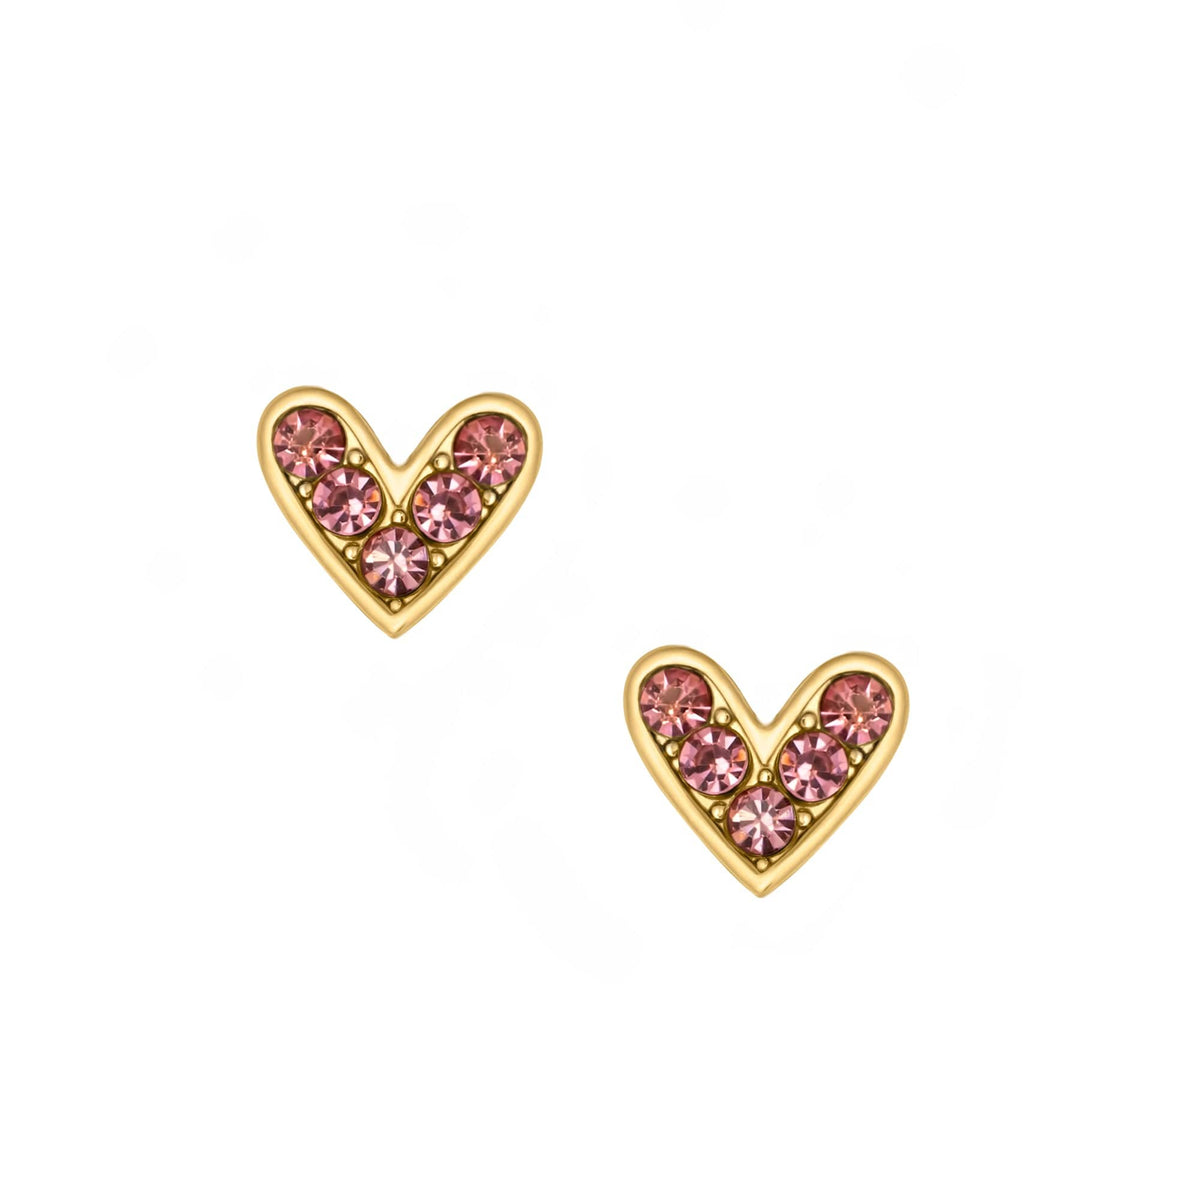 BohoMoon Stainless Steel Lust Stud Earrings Gold